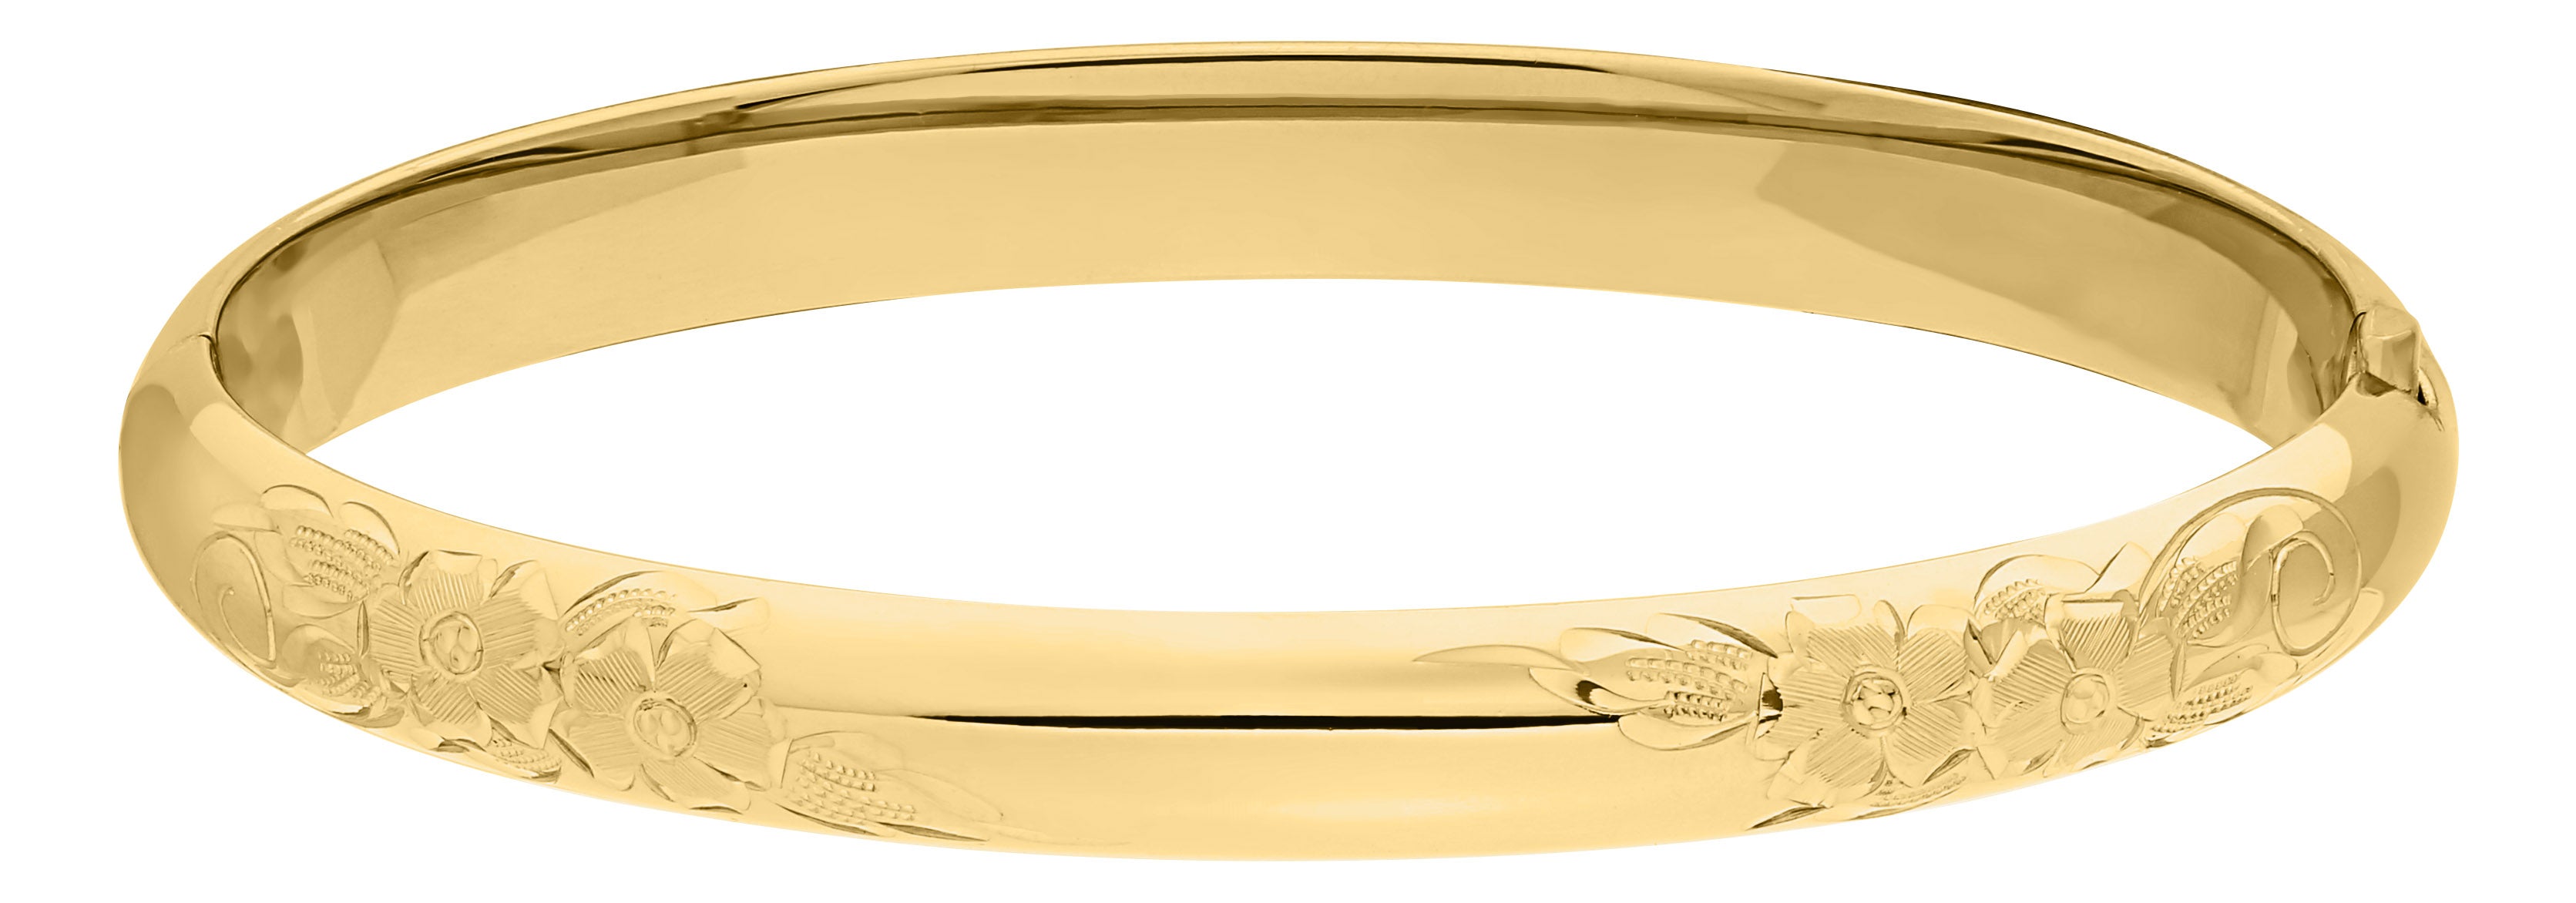 Kiddie Kraft 14kt Gold Filled Bracelet